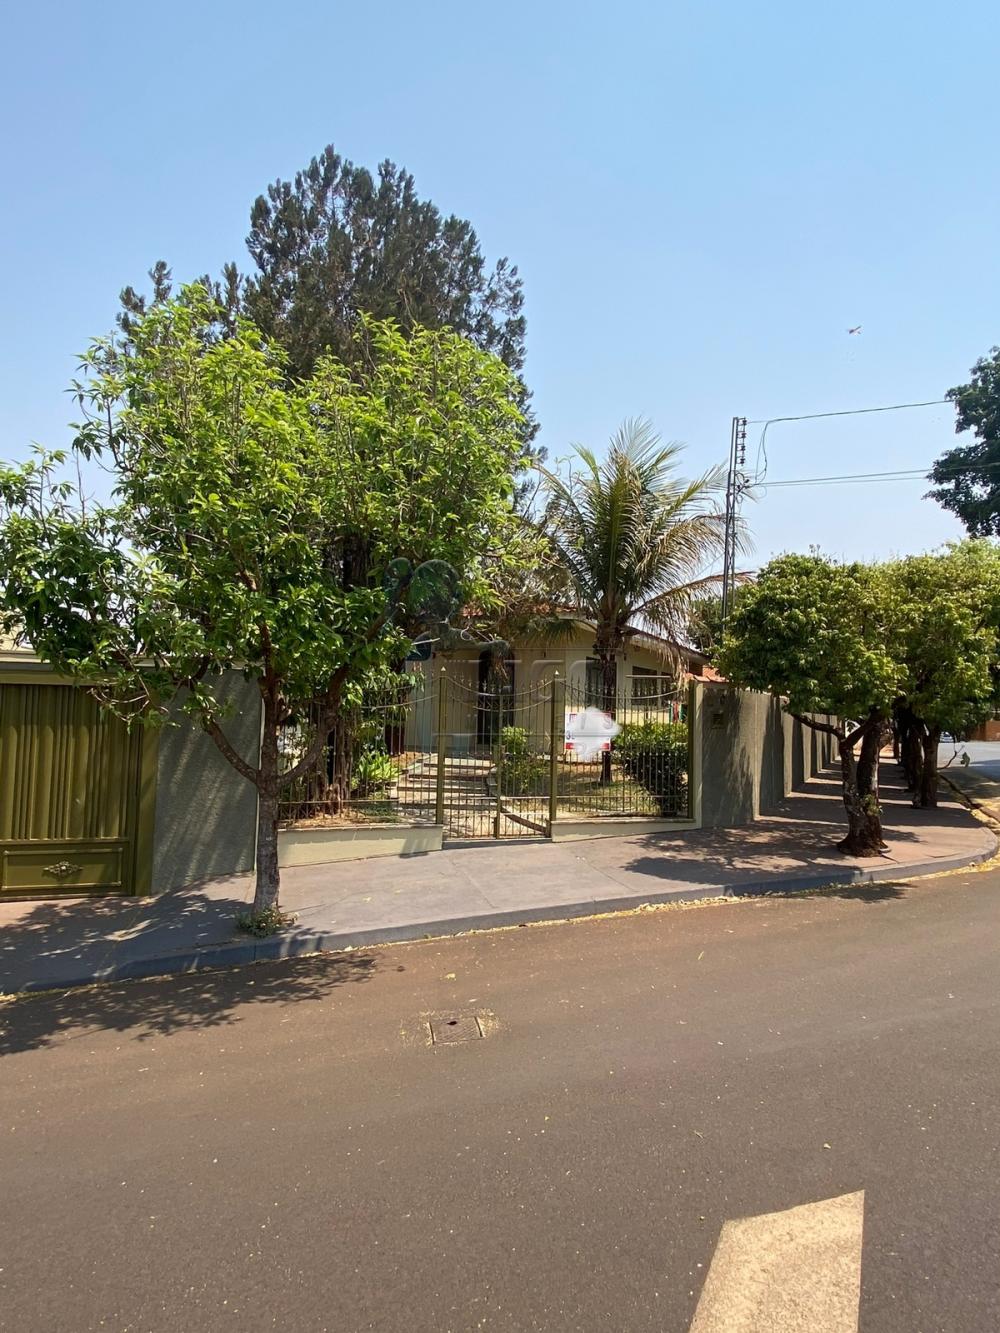 Comprar Casa / Padrão em Ribeirão Preto R$ 850.000,00 - Foto 2